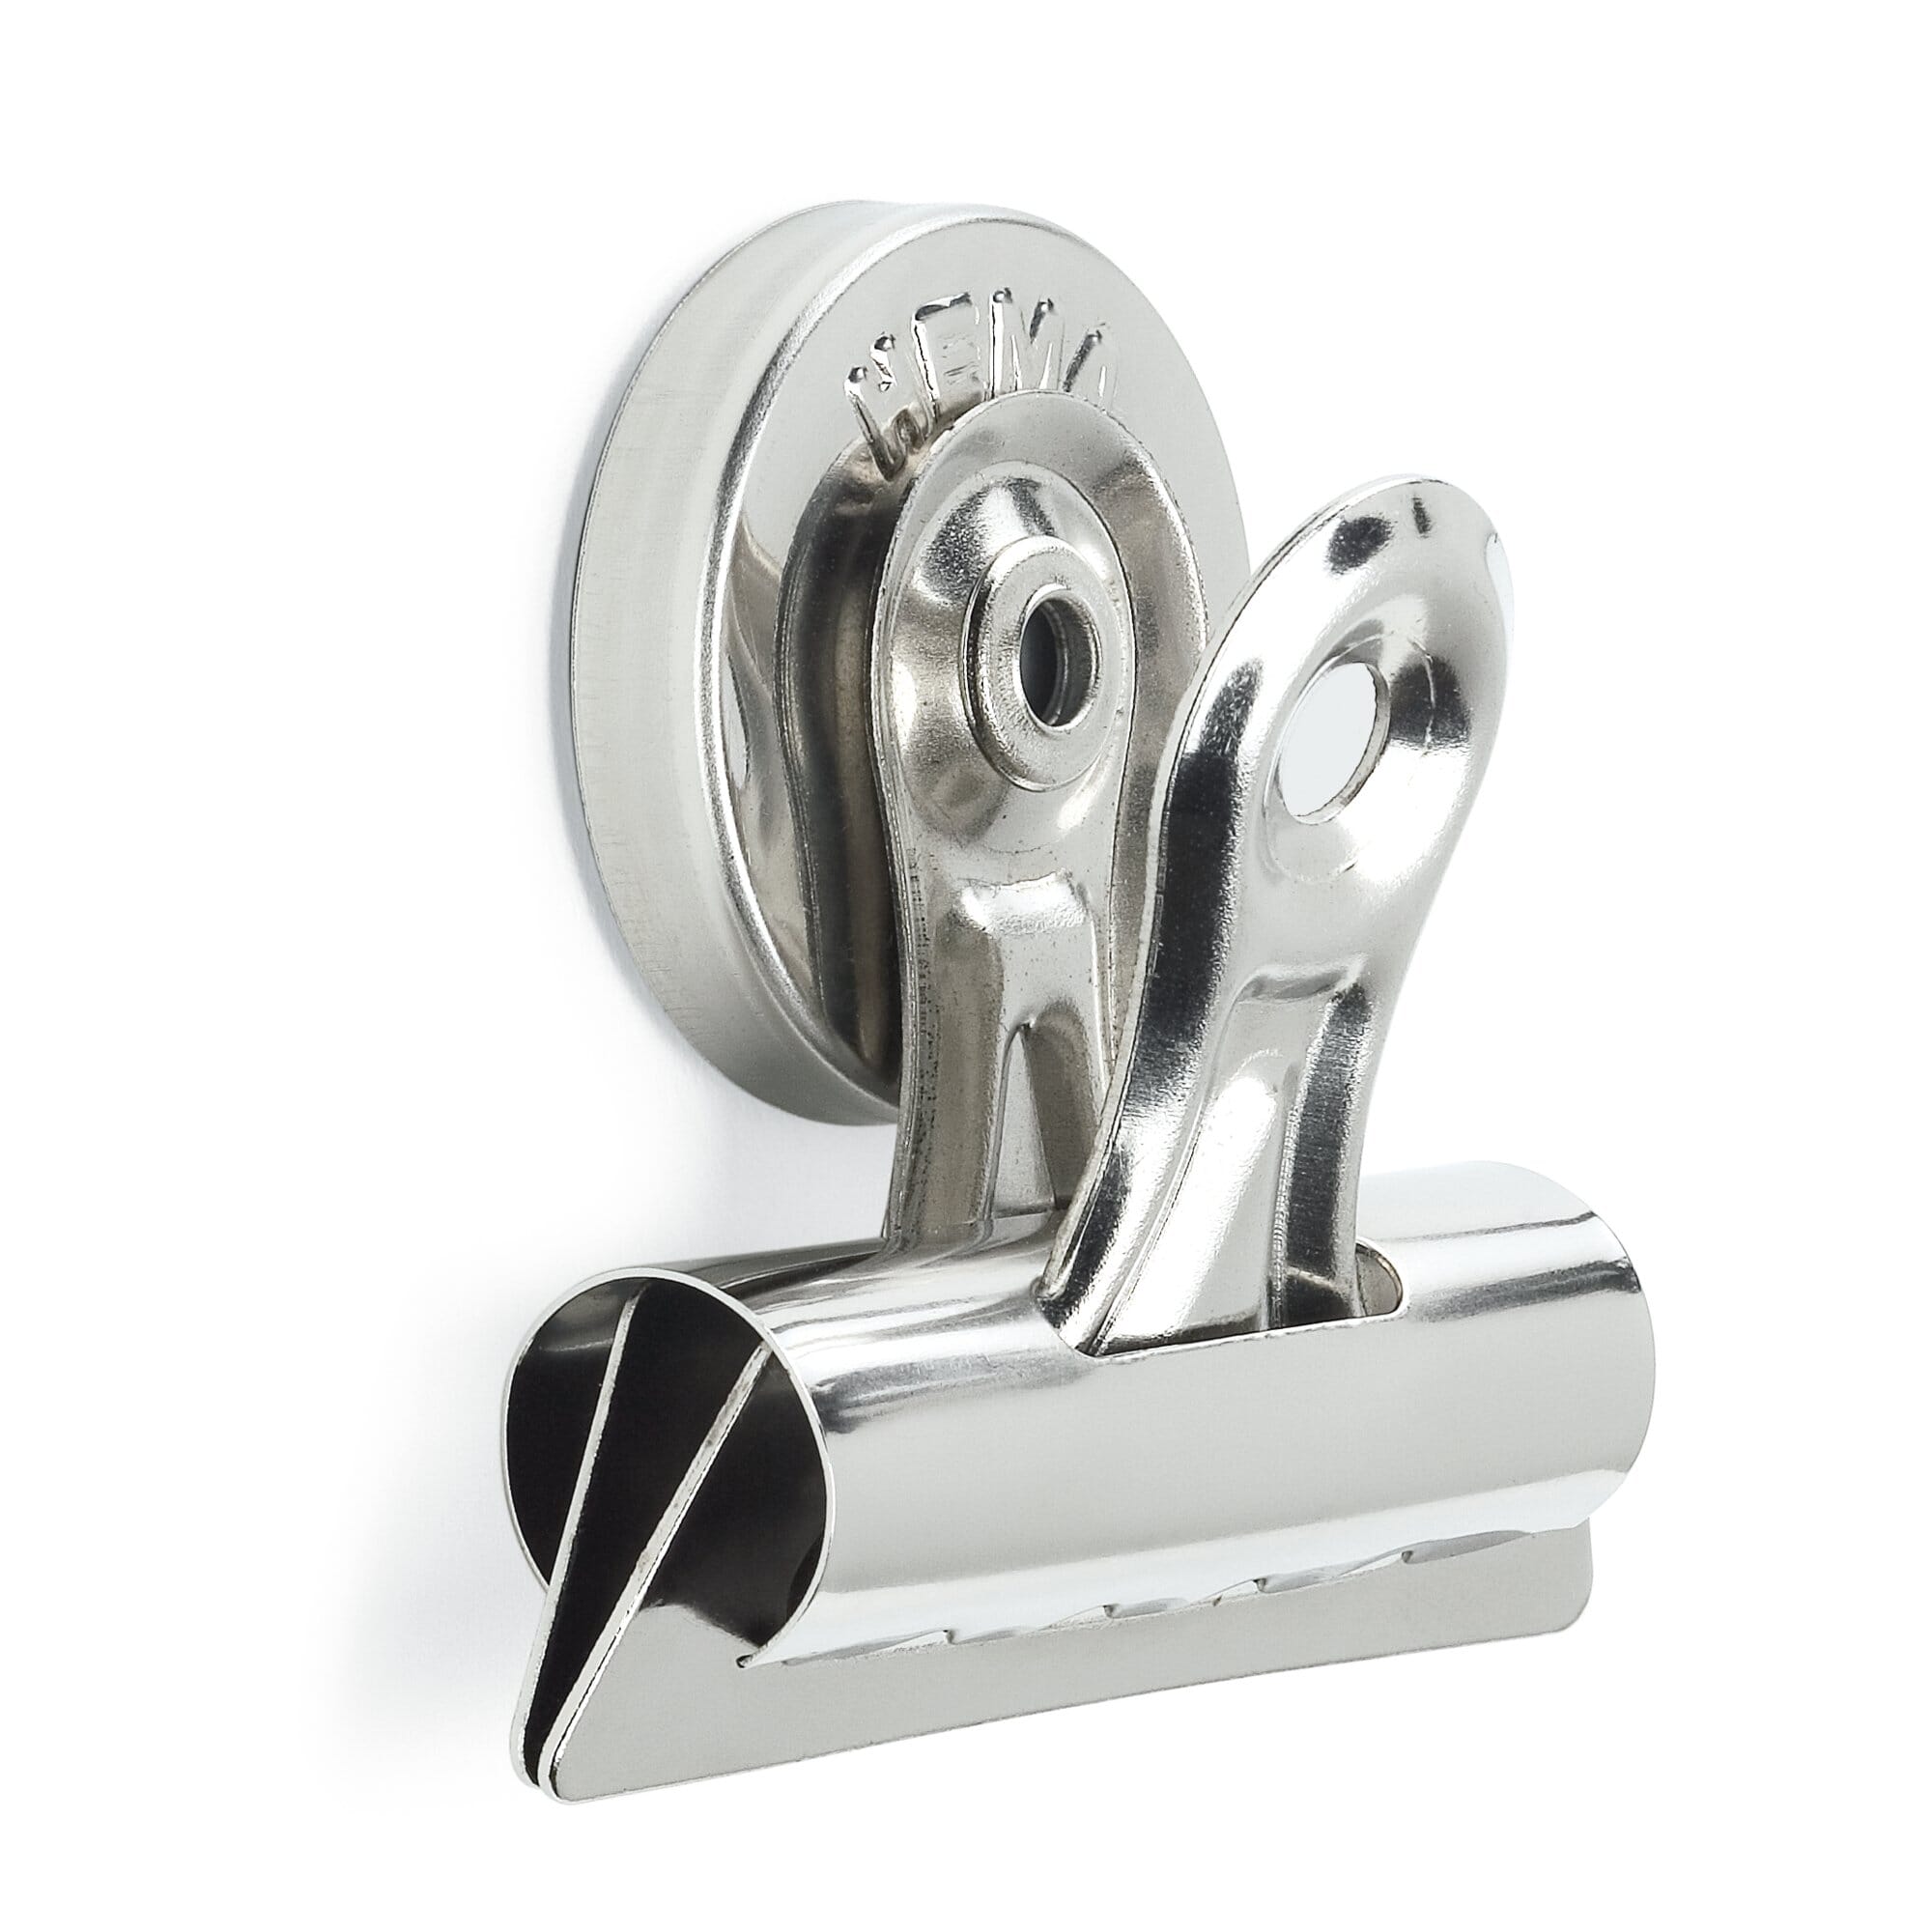 Klammer mit Magnet Briefklammern magnetisch Klemmen Metall Kluppe, € 0,50  (9500 Dobrova) - willhaben